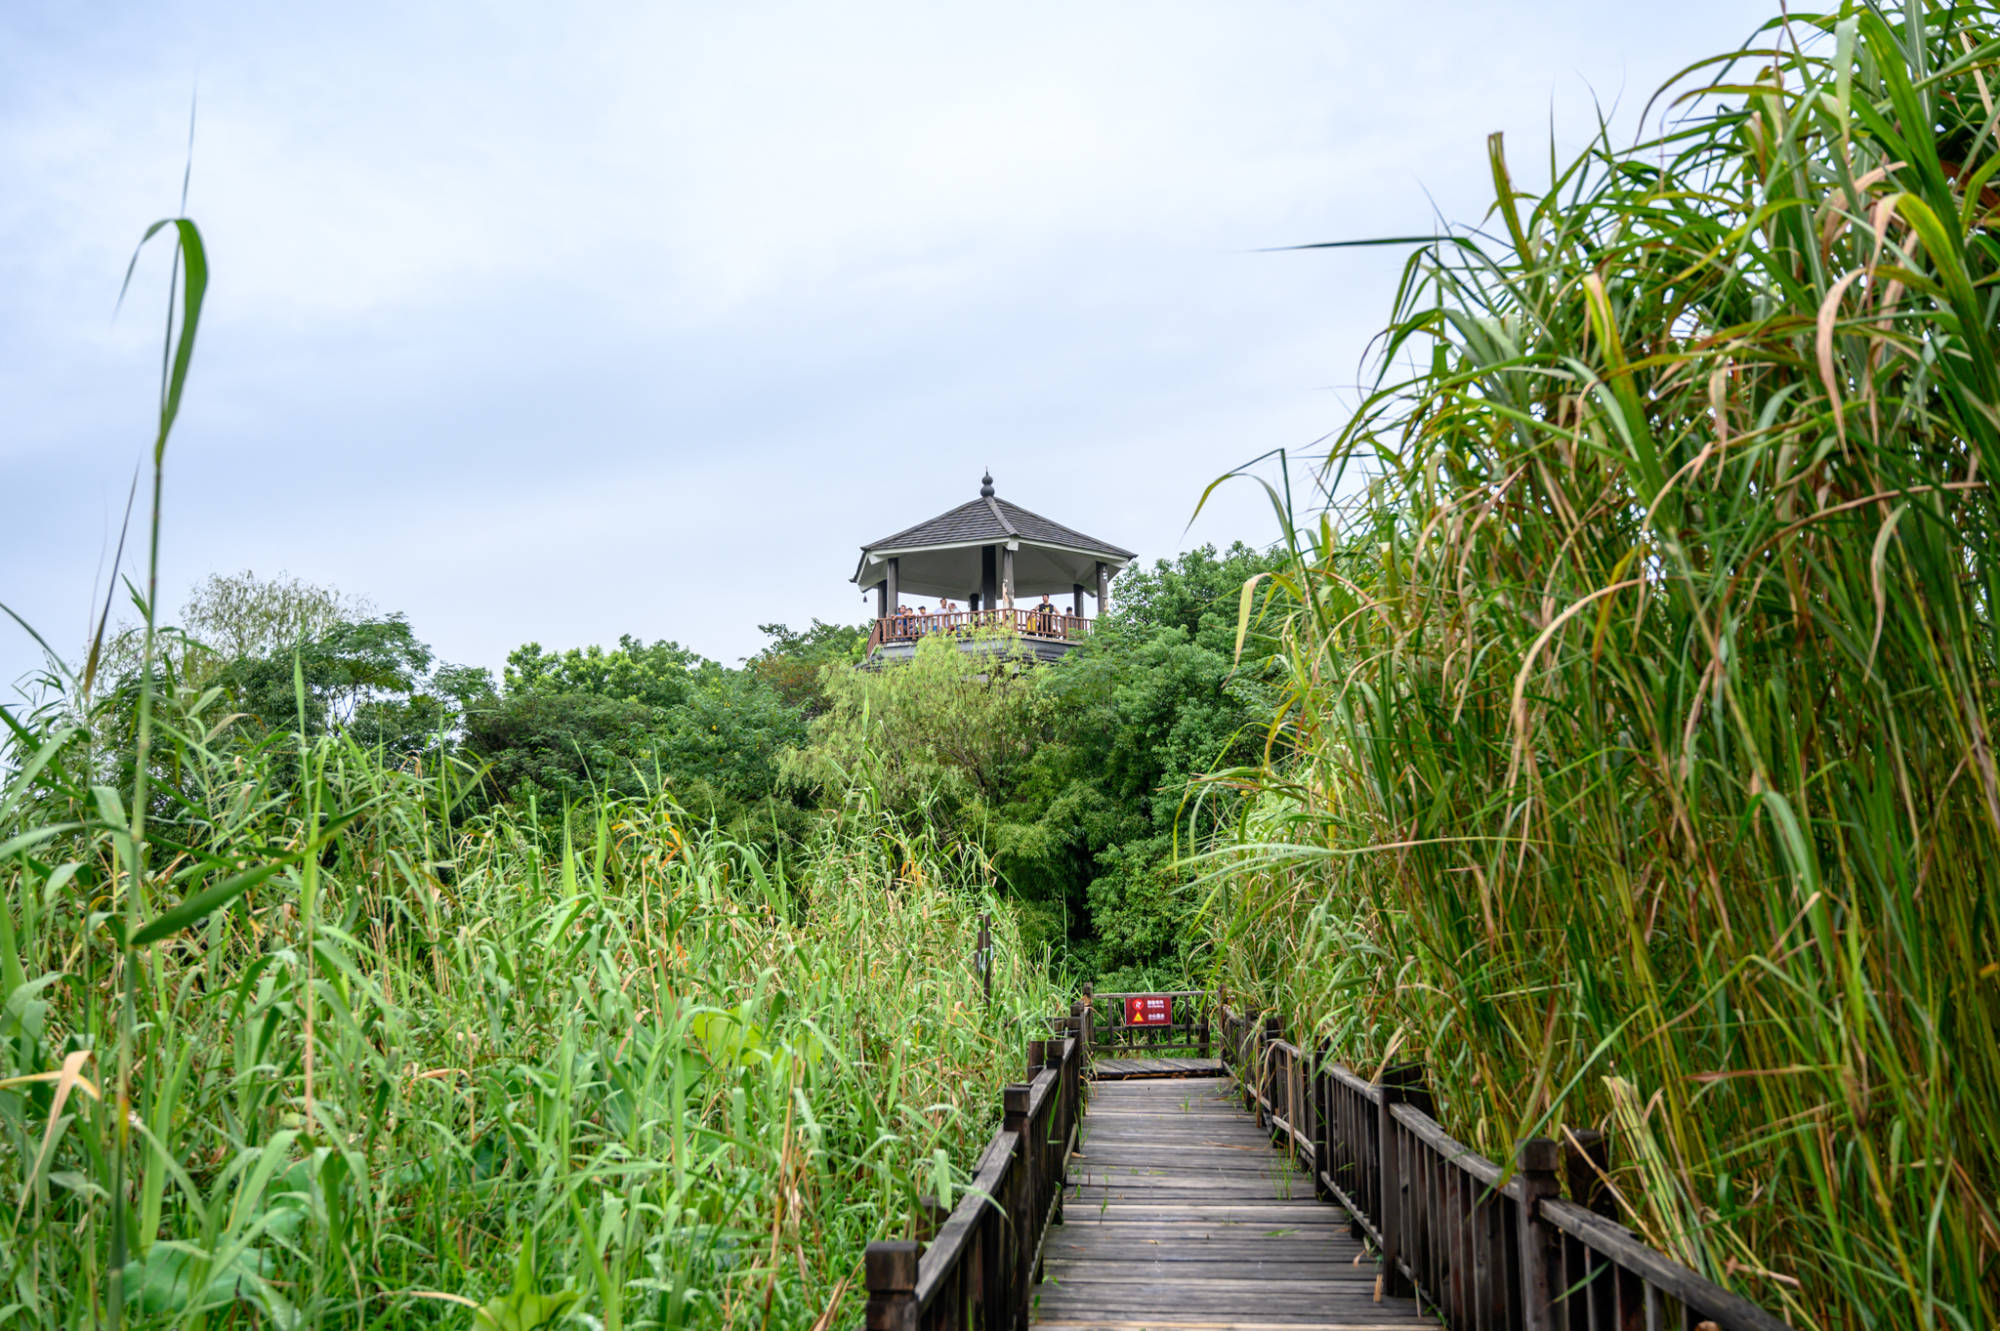 原创德清下渚湖一处原生态的天然湿地秘境被誉为中国最美湿地